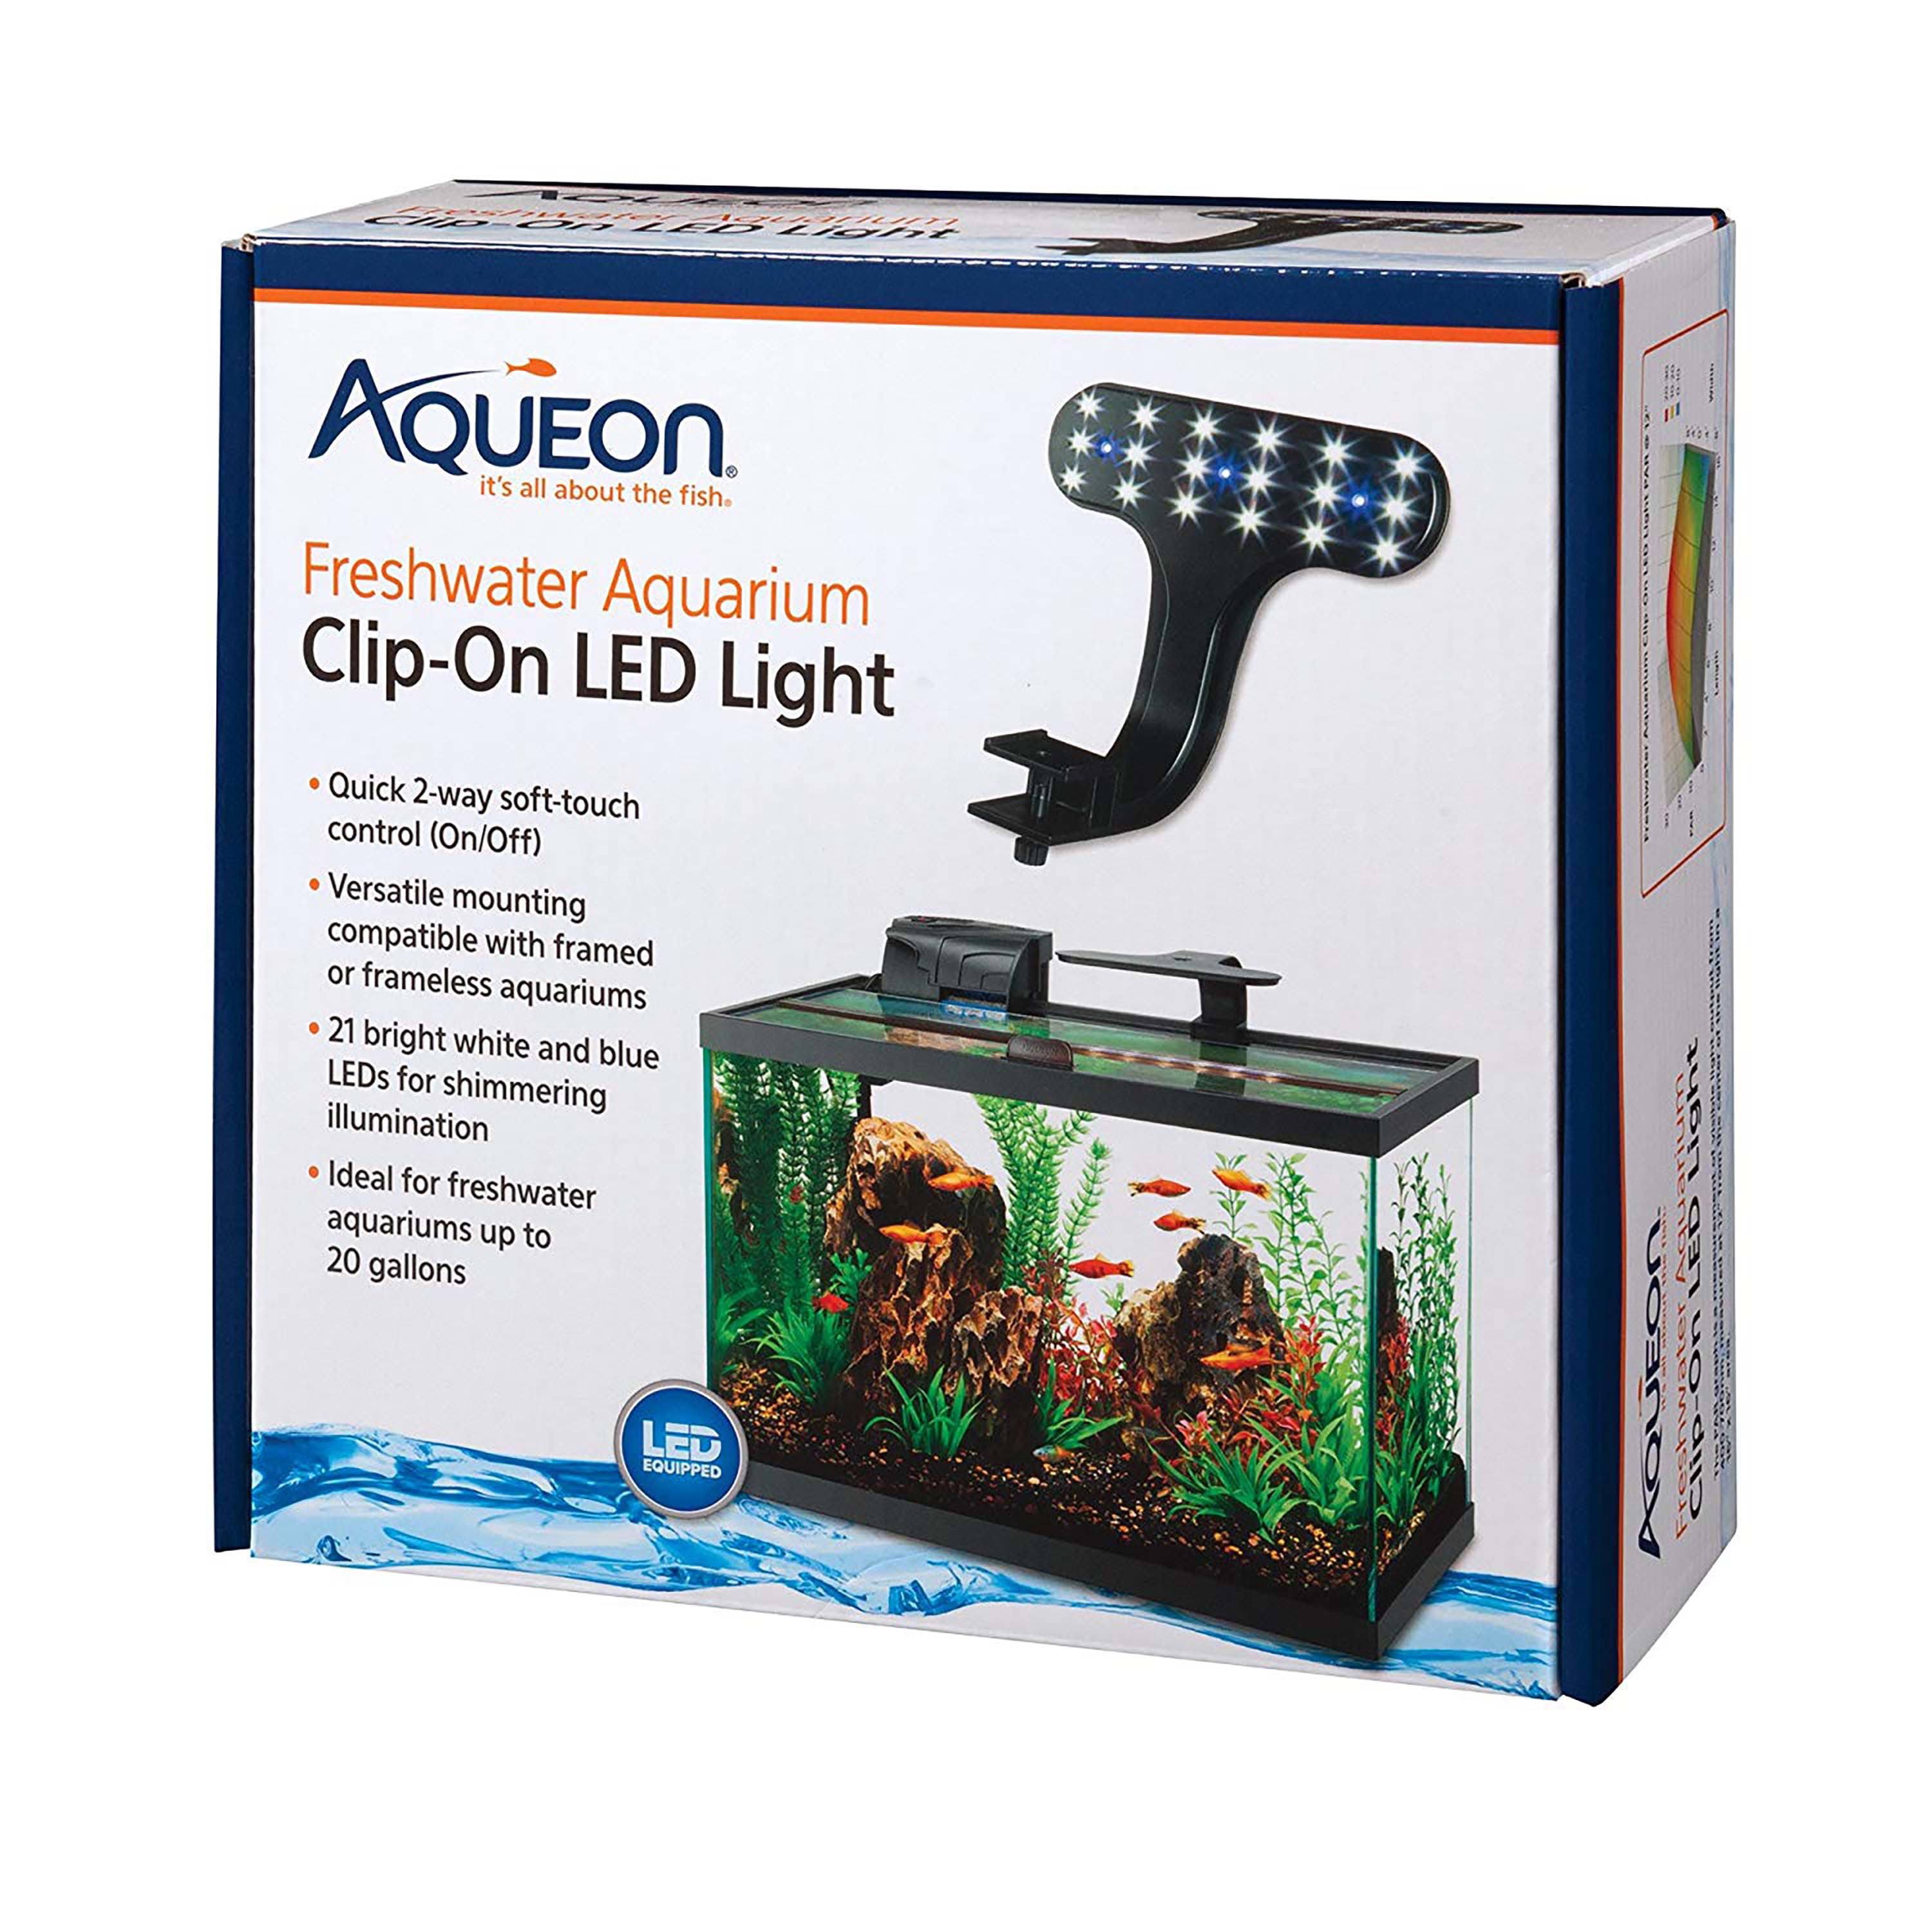 Aqueon Aquarium Clip On Led Light - Freshwater